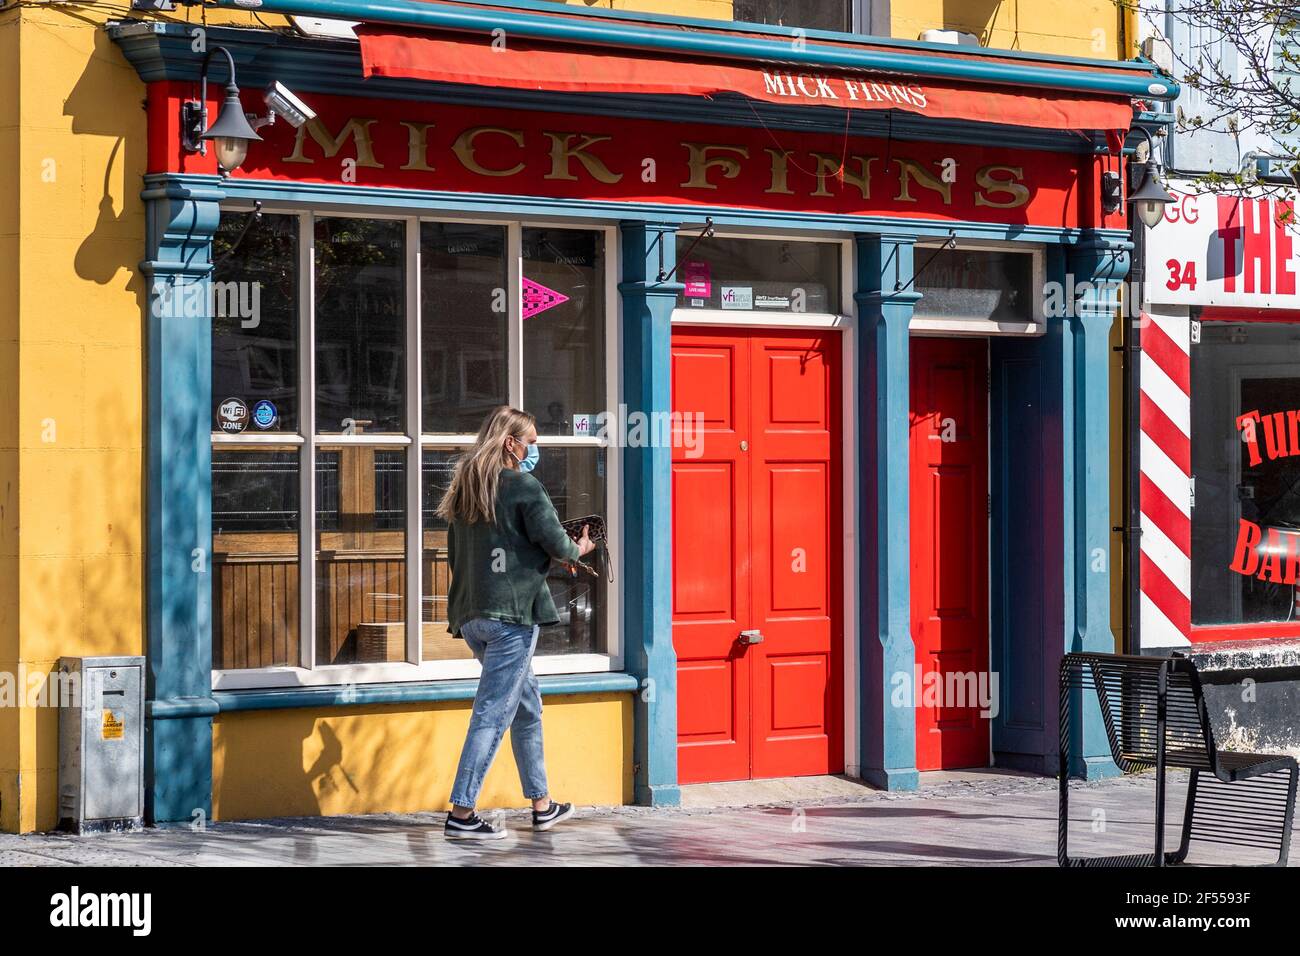 Clonakilty, West Cork, Irland. März 2021, 24th. Mick Finns Pub in Clonakilty bleibt wegen der COVID-19 Pandemie geschlossen, da die Republikaner landesweit alle Pubs wieder öffnen wollen. Vermieter wollen keinen Unterschied zwischen Pubs, die Essen servieren, und so genannten "nassen" Pubs. Quelle: AG News/Alamy Live News Stockfoto